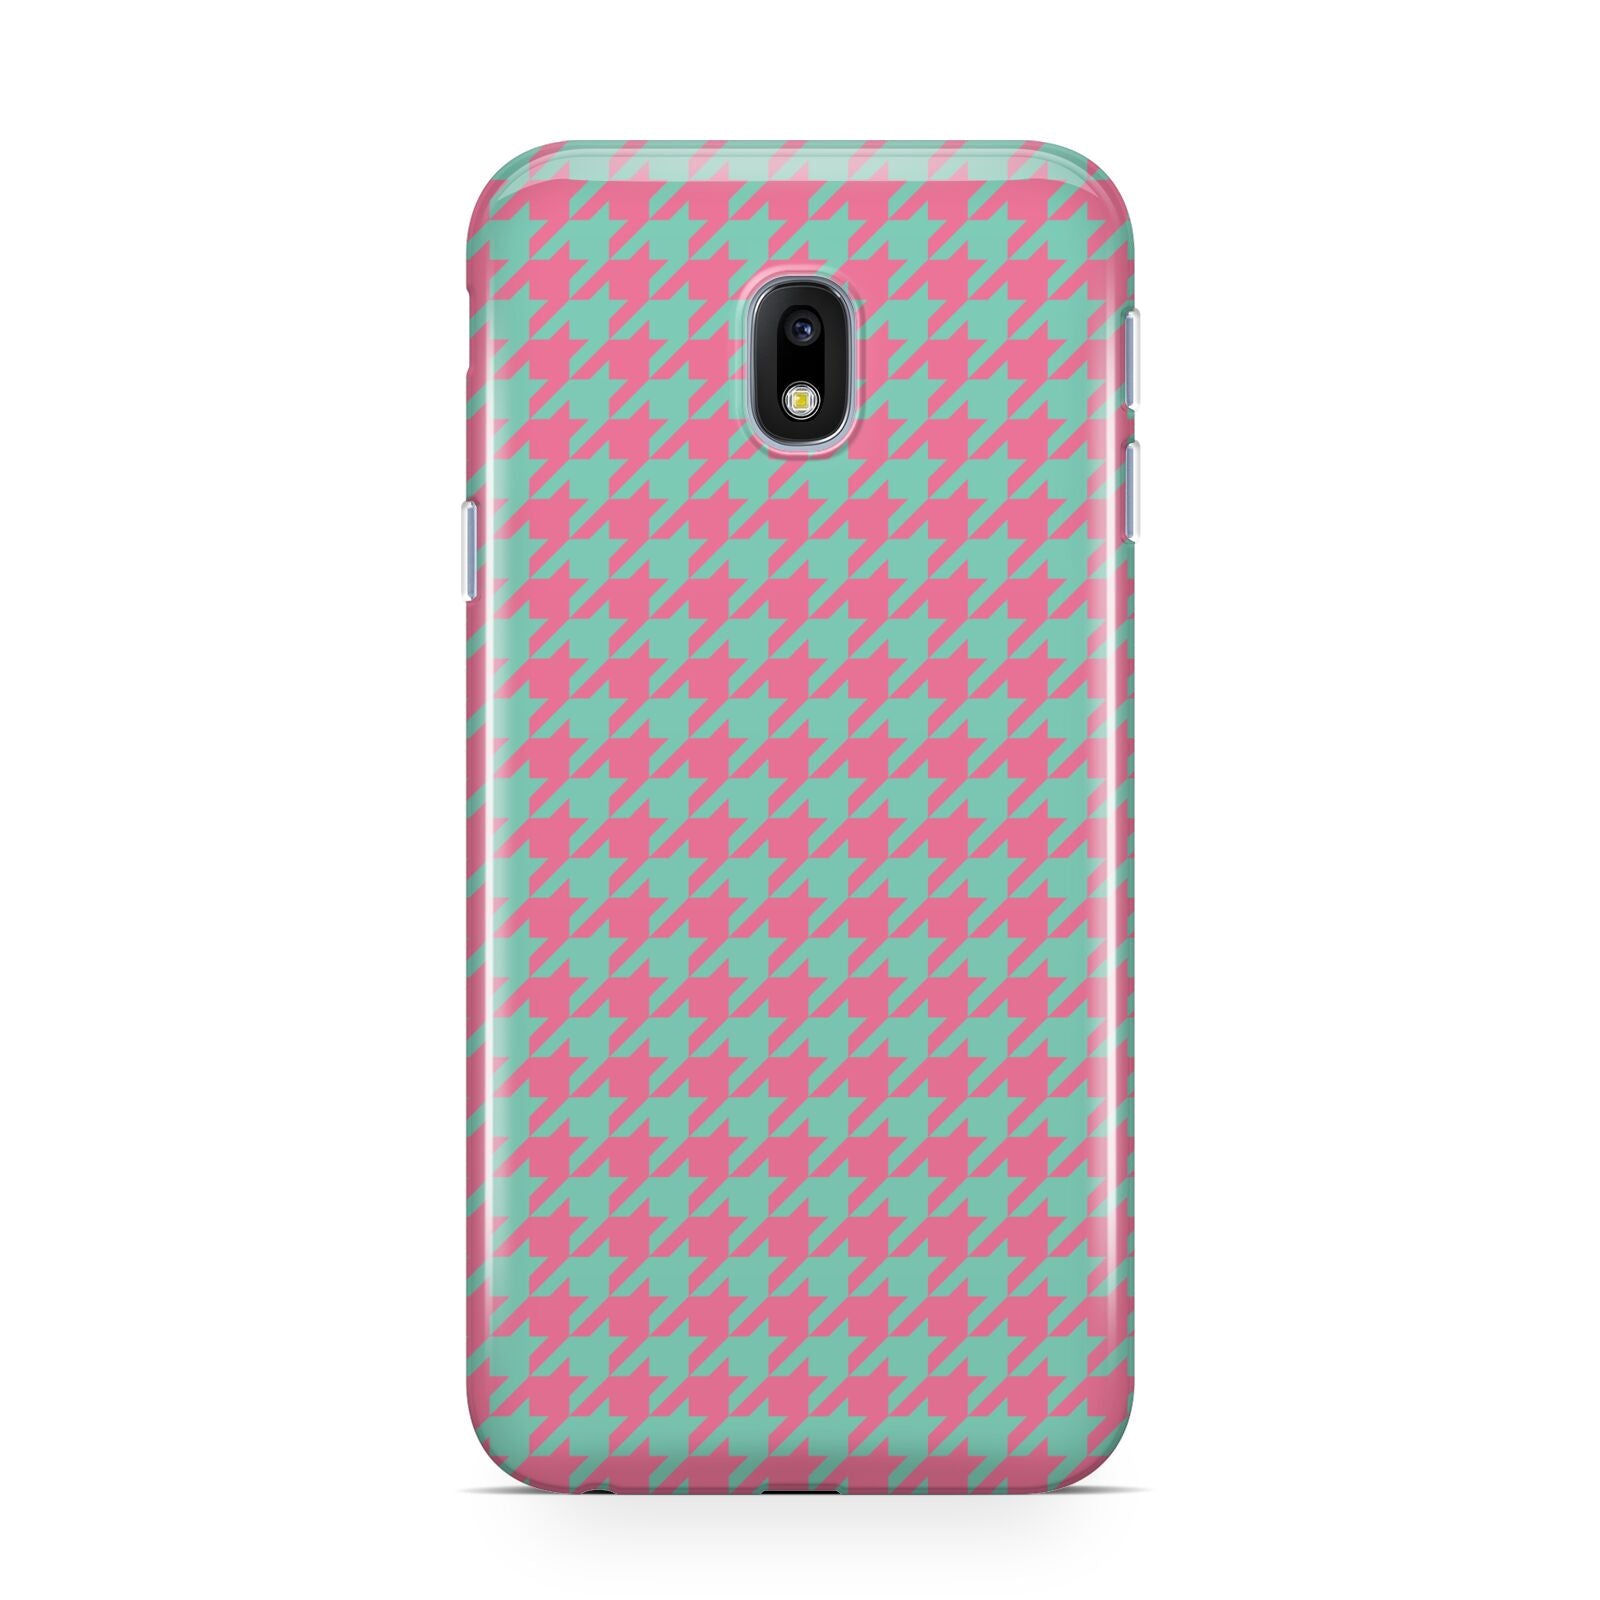 Pink Houndstooth Samsung Galaxy J3 2017 Case